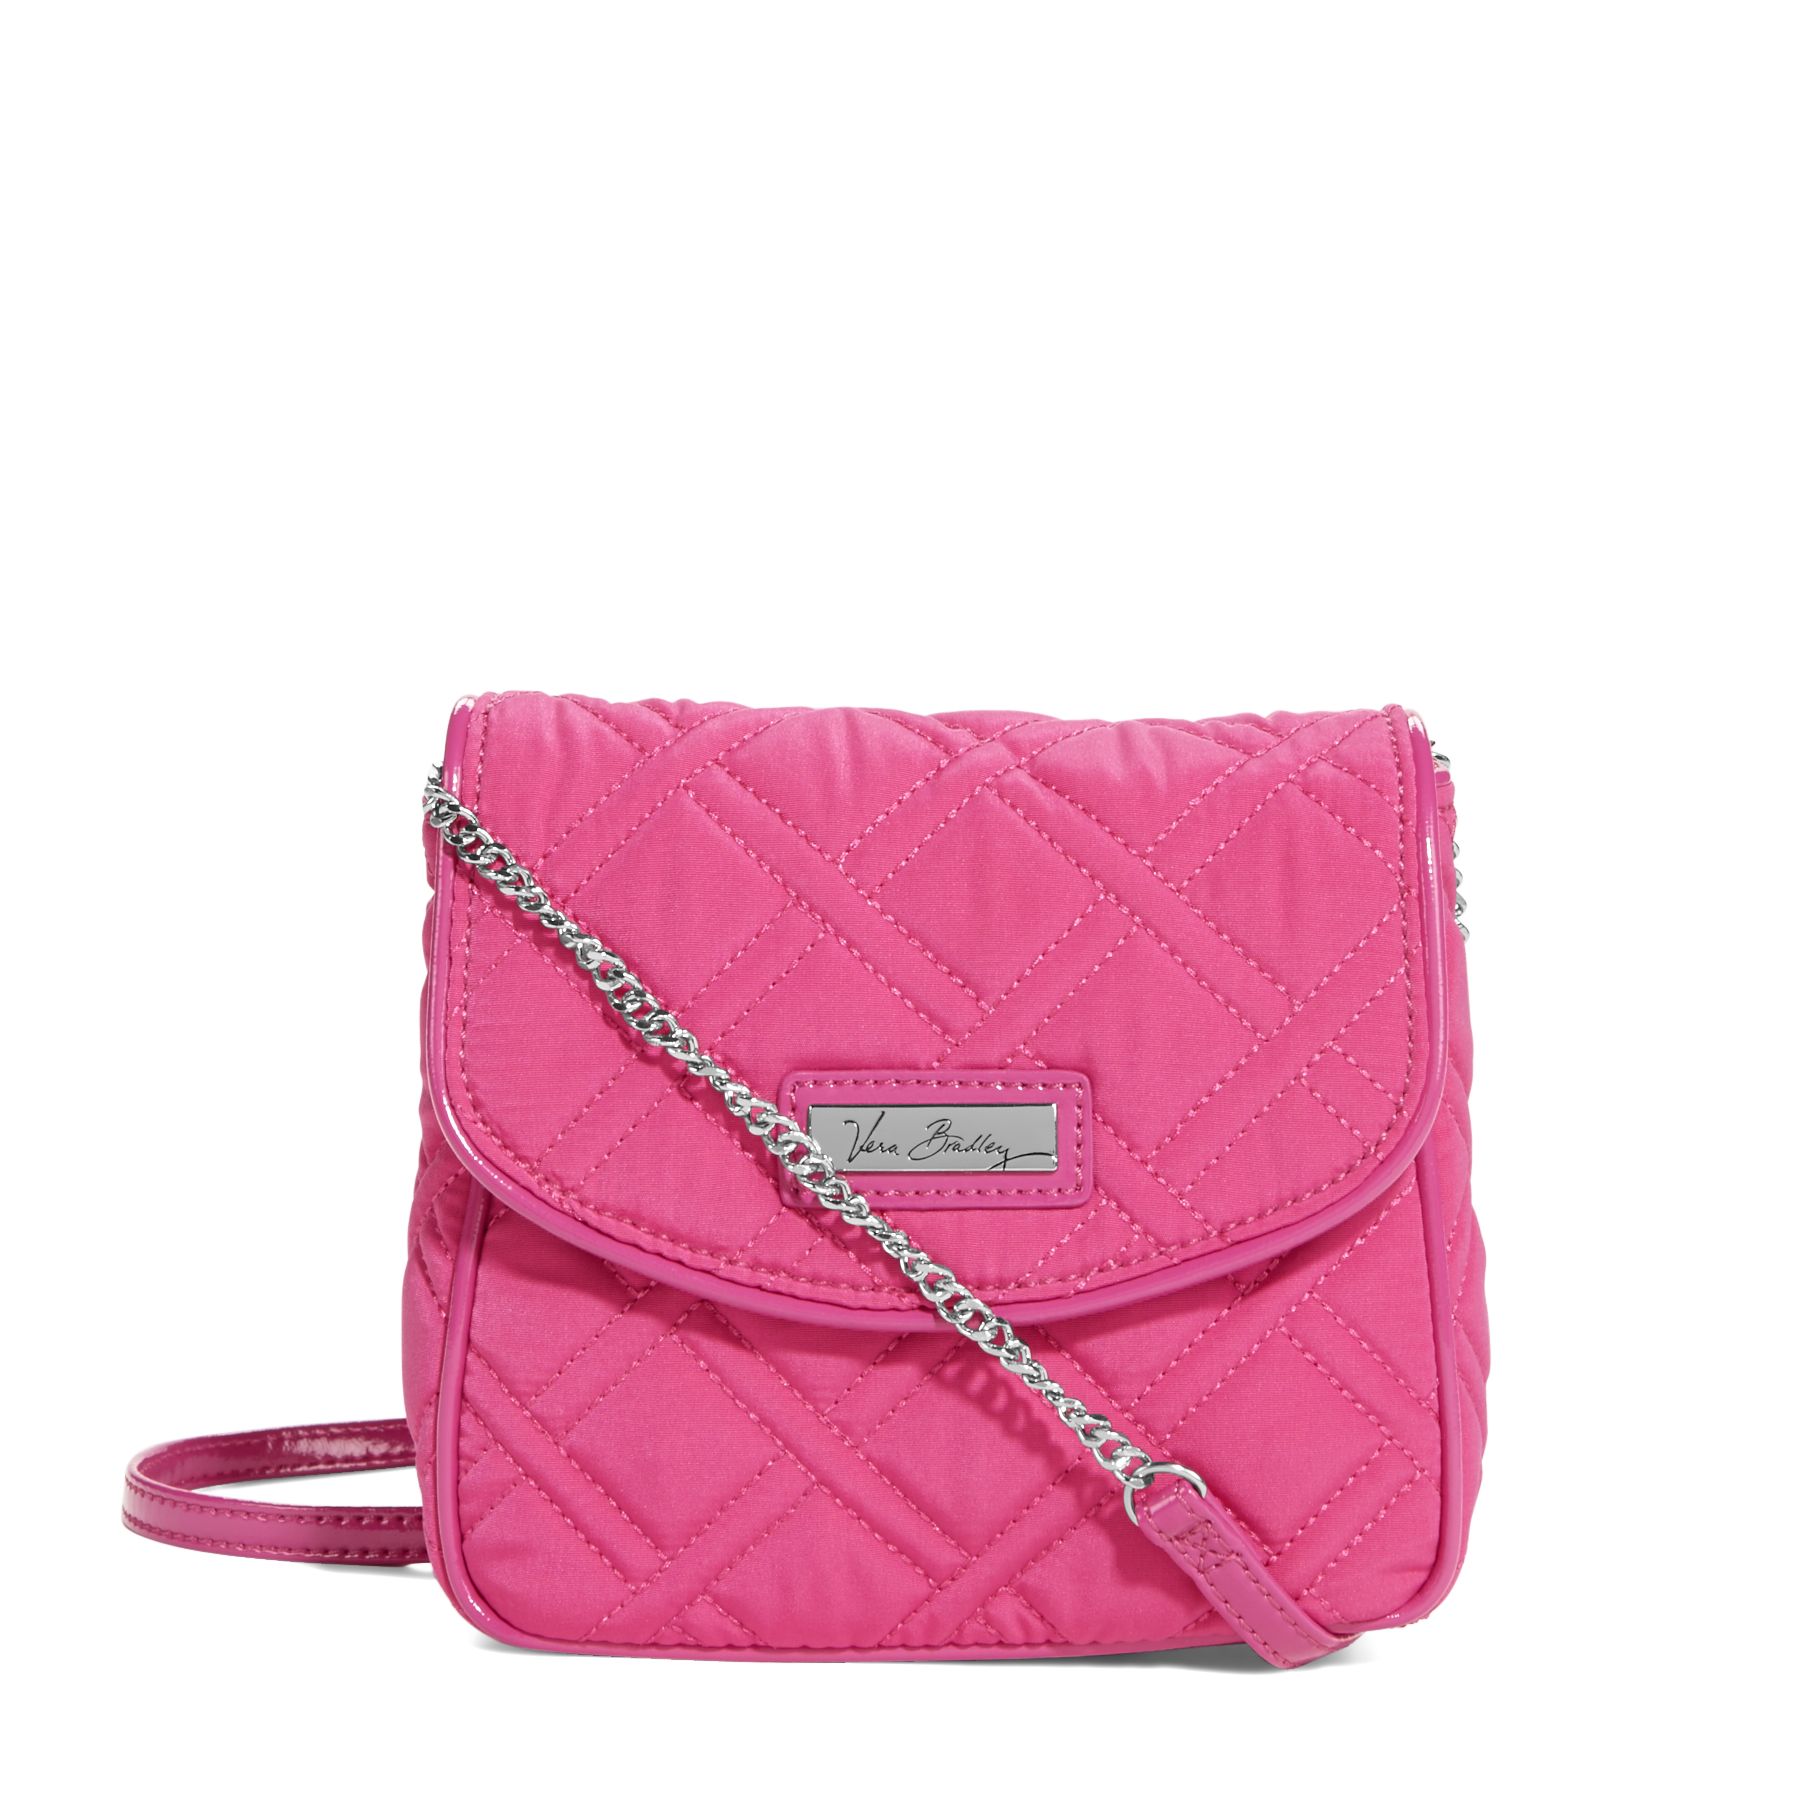 Vera Bradley Chain Strap Crossbody Bag | eBay